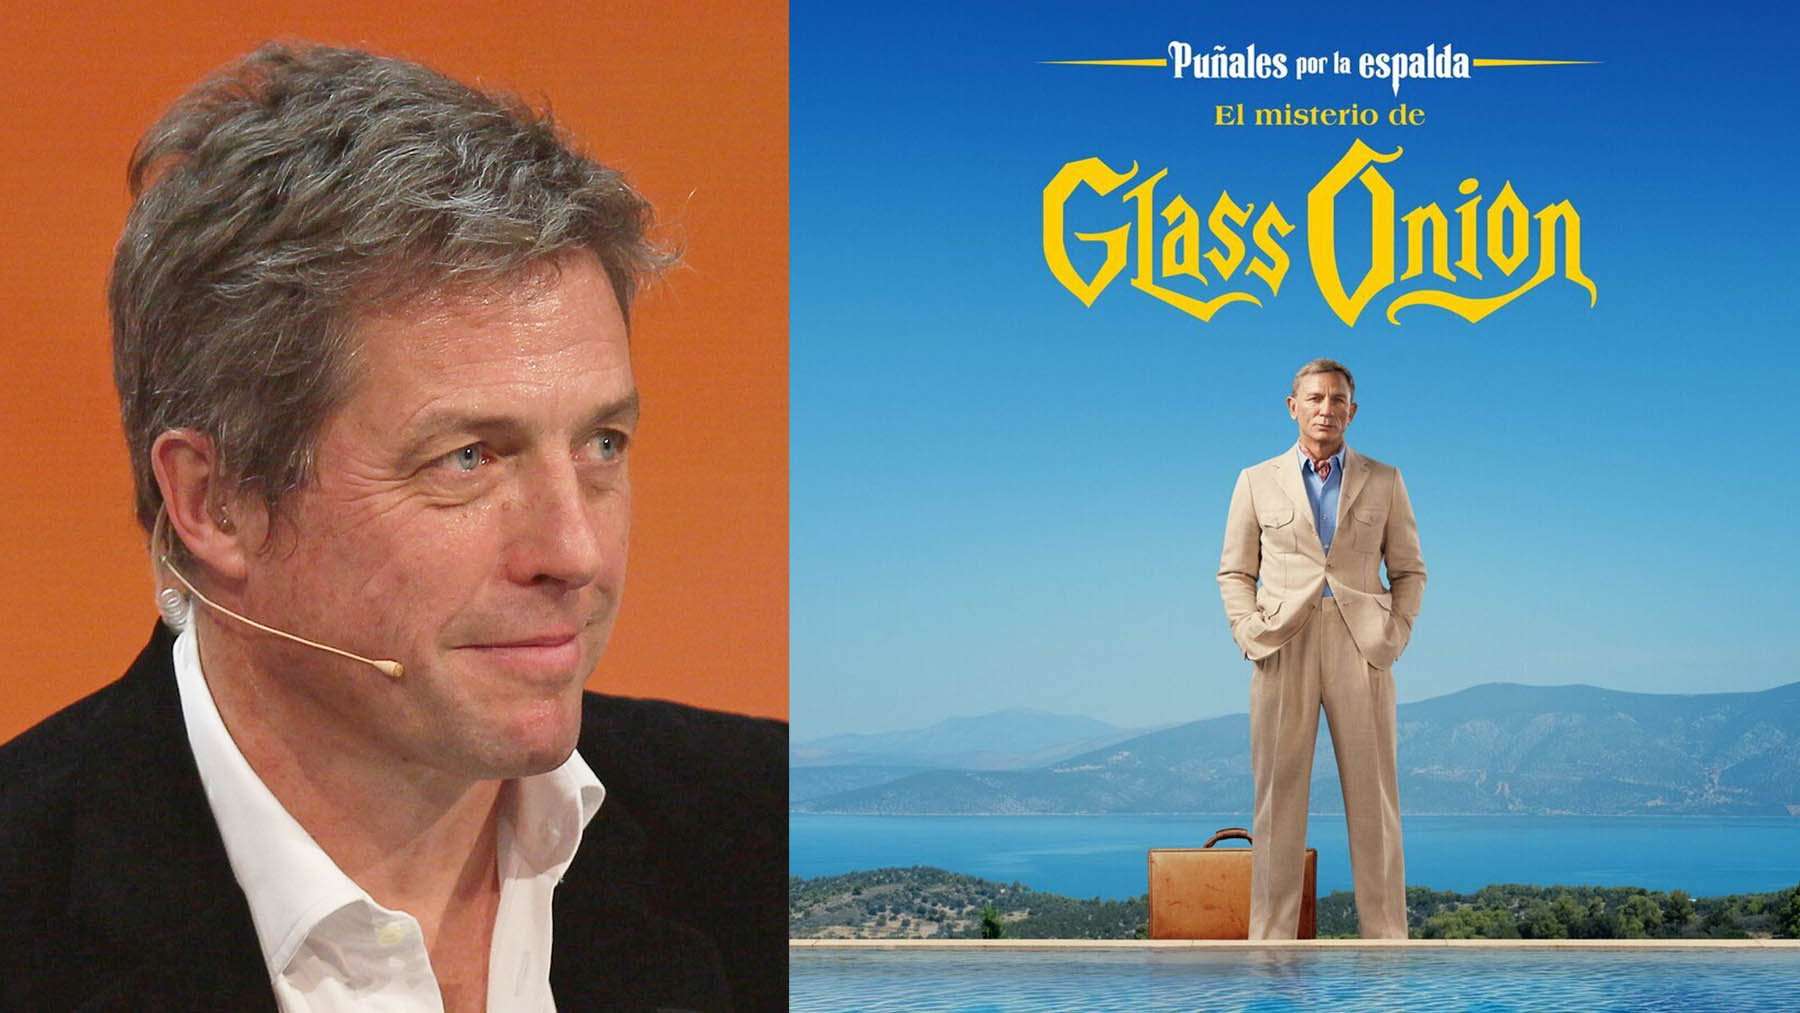 Hugh Grant confirma lo que todos pensamos en esta escena de ‘Puñales por la espalda: el misterio de Glass Onion’